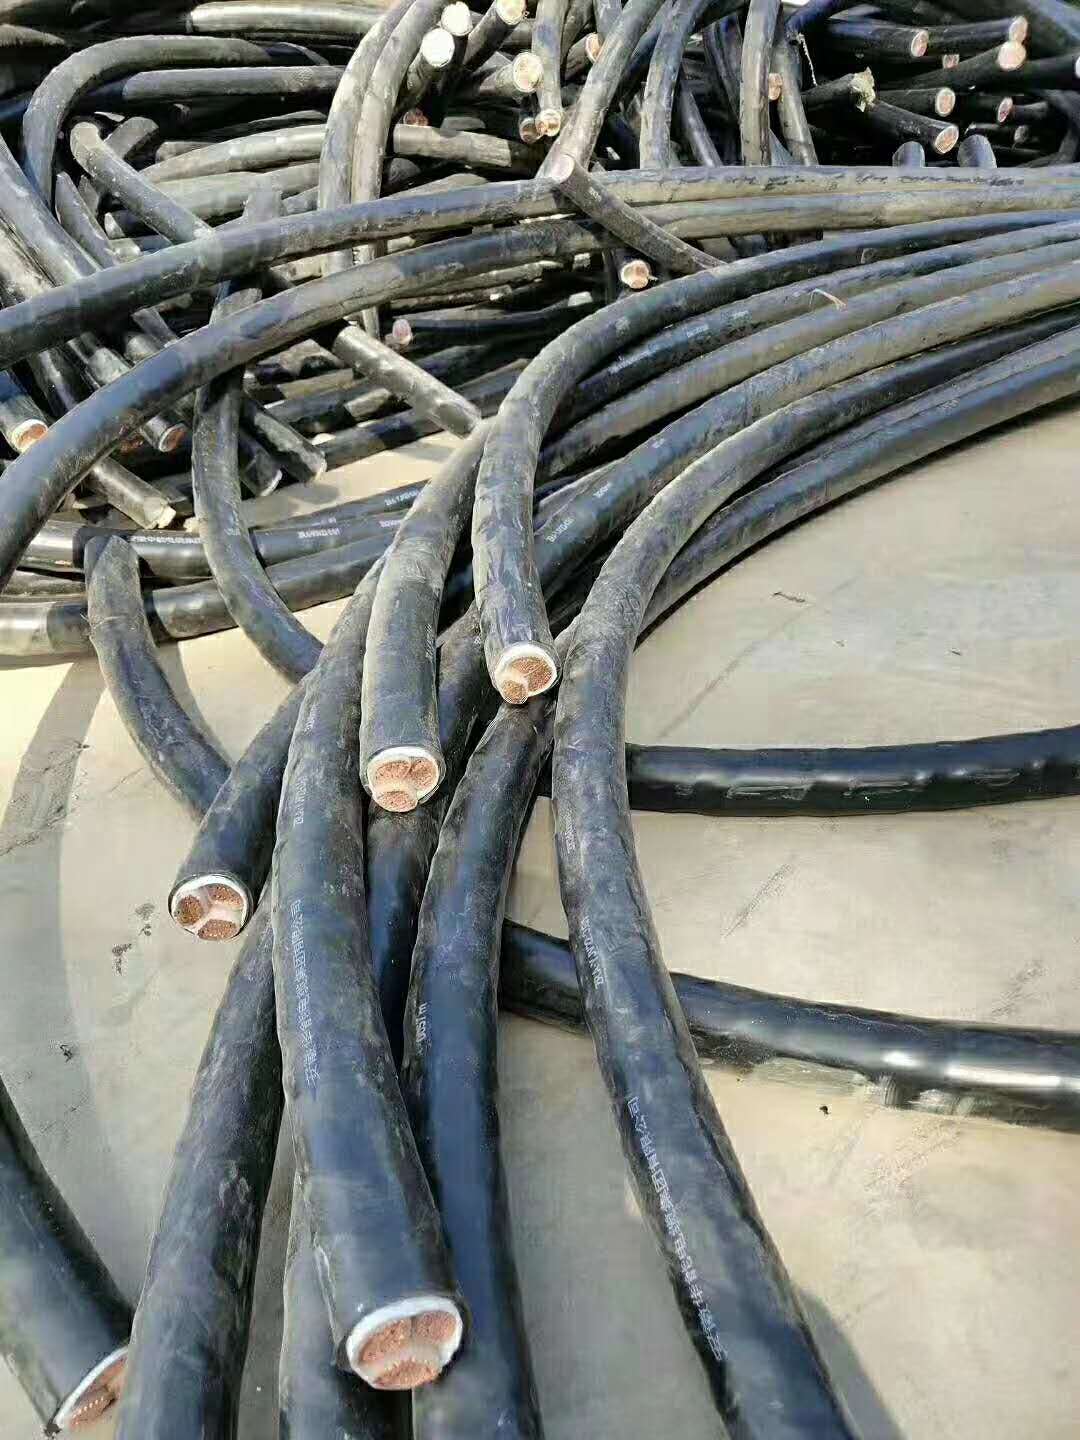 石家庄电缆回收价格_电缆回收价格_珠海废旧电缆回收价格